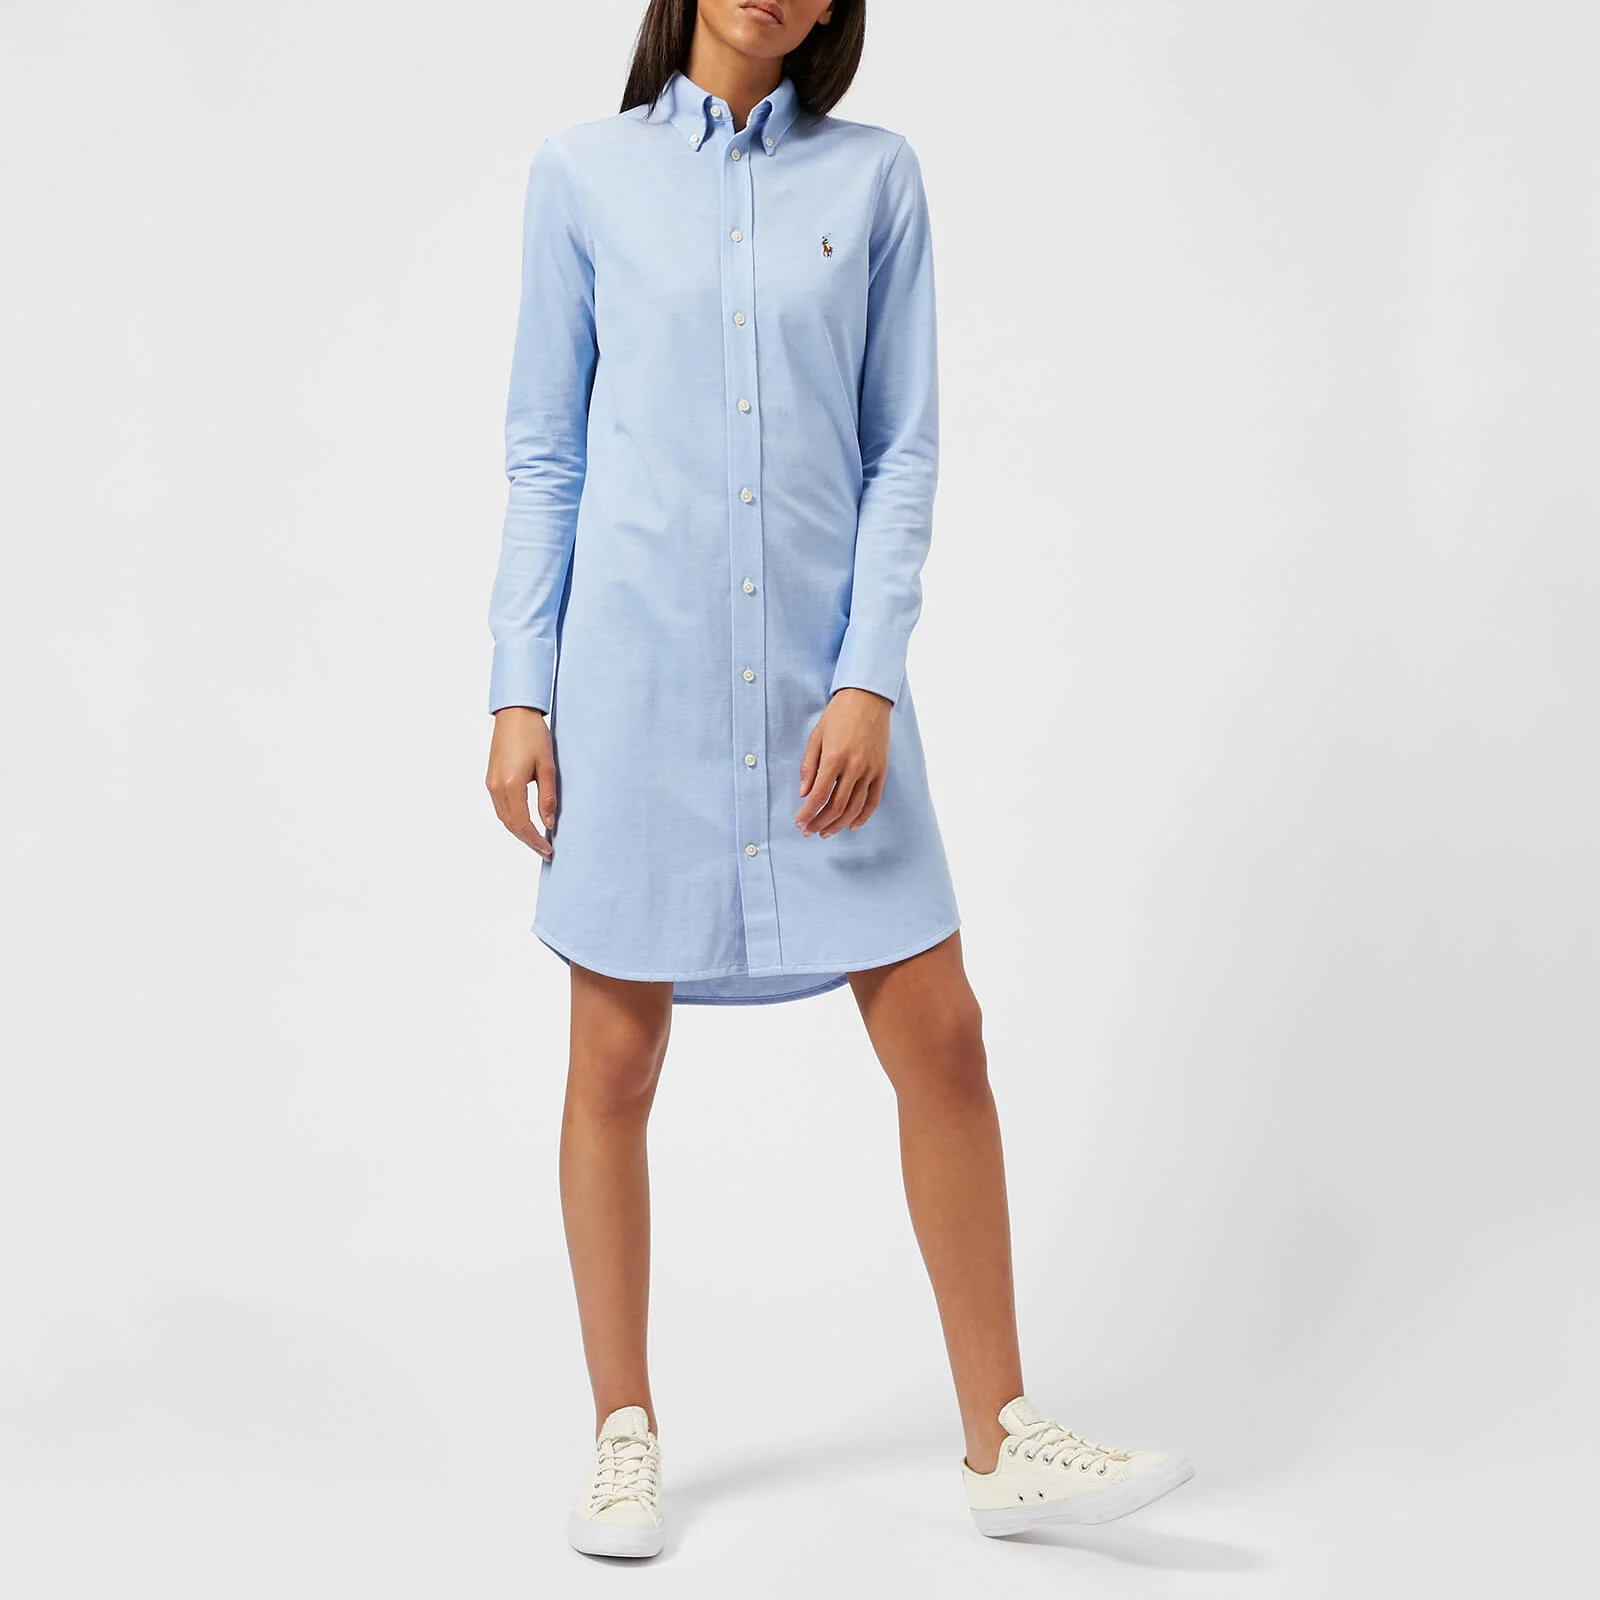 Polo Ralph Lauren Women's Oxford Shirt Dress - Blue Image 1